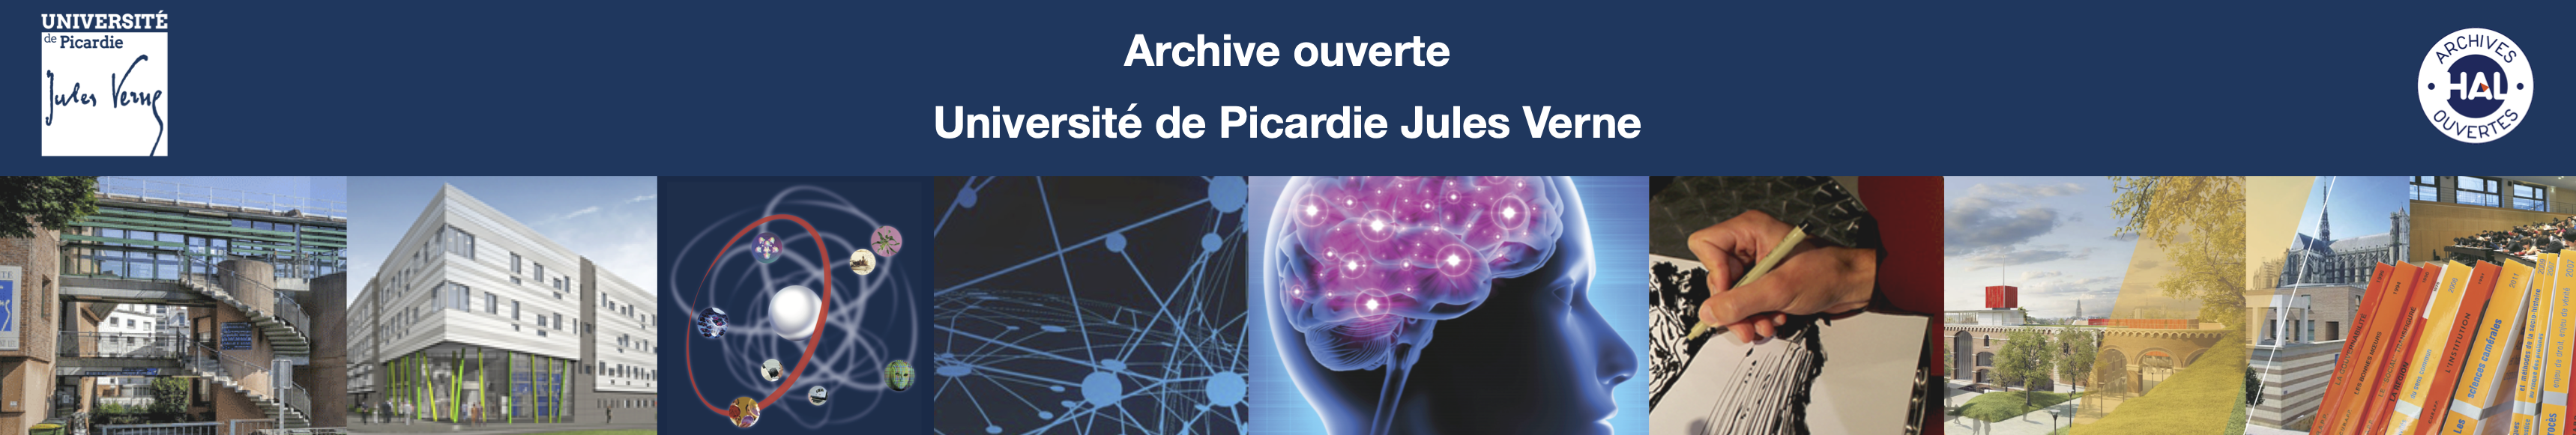 Archive ouverte Université de Picardie Jules Verne